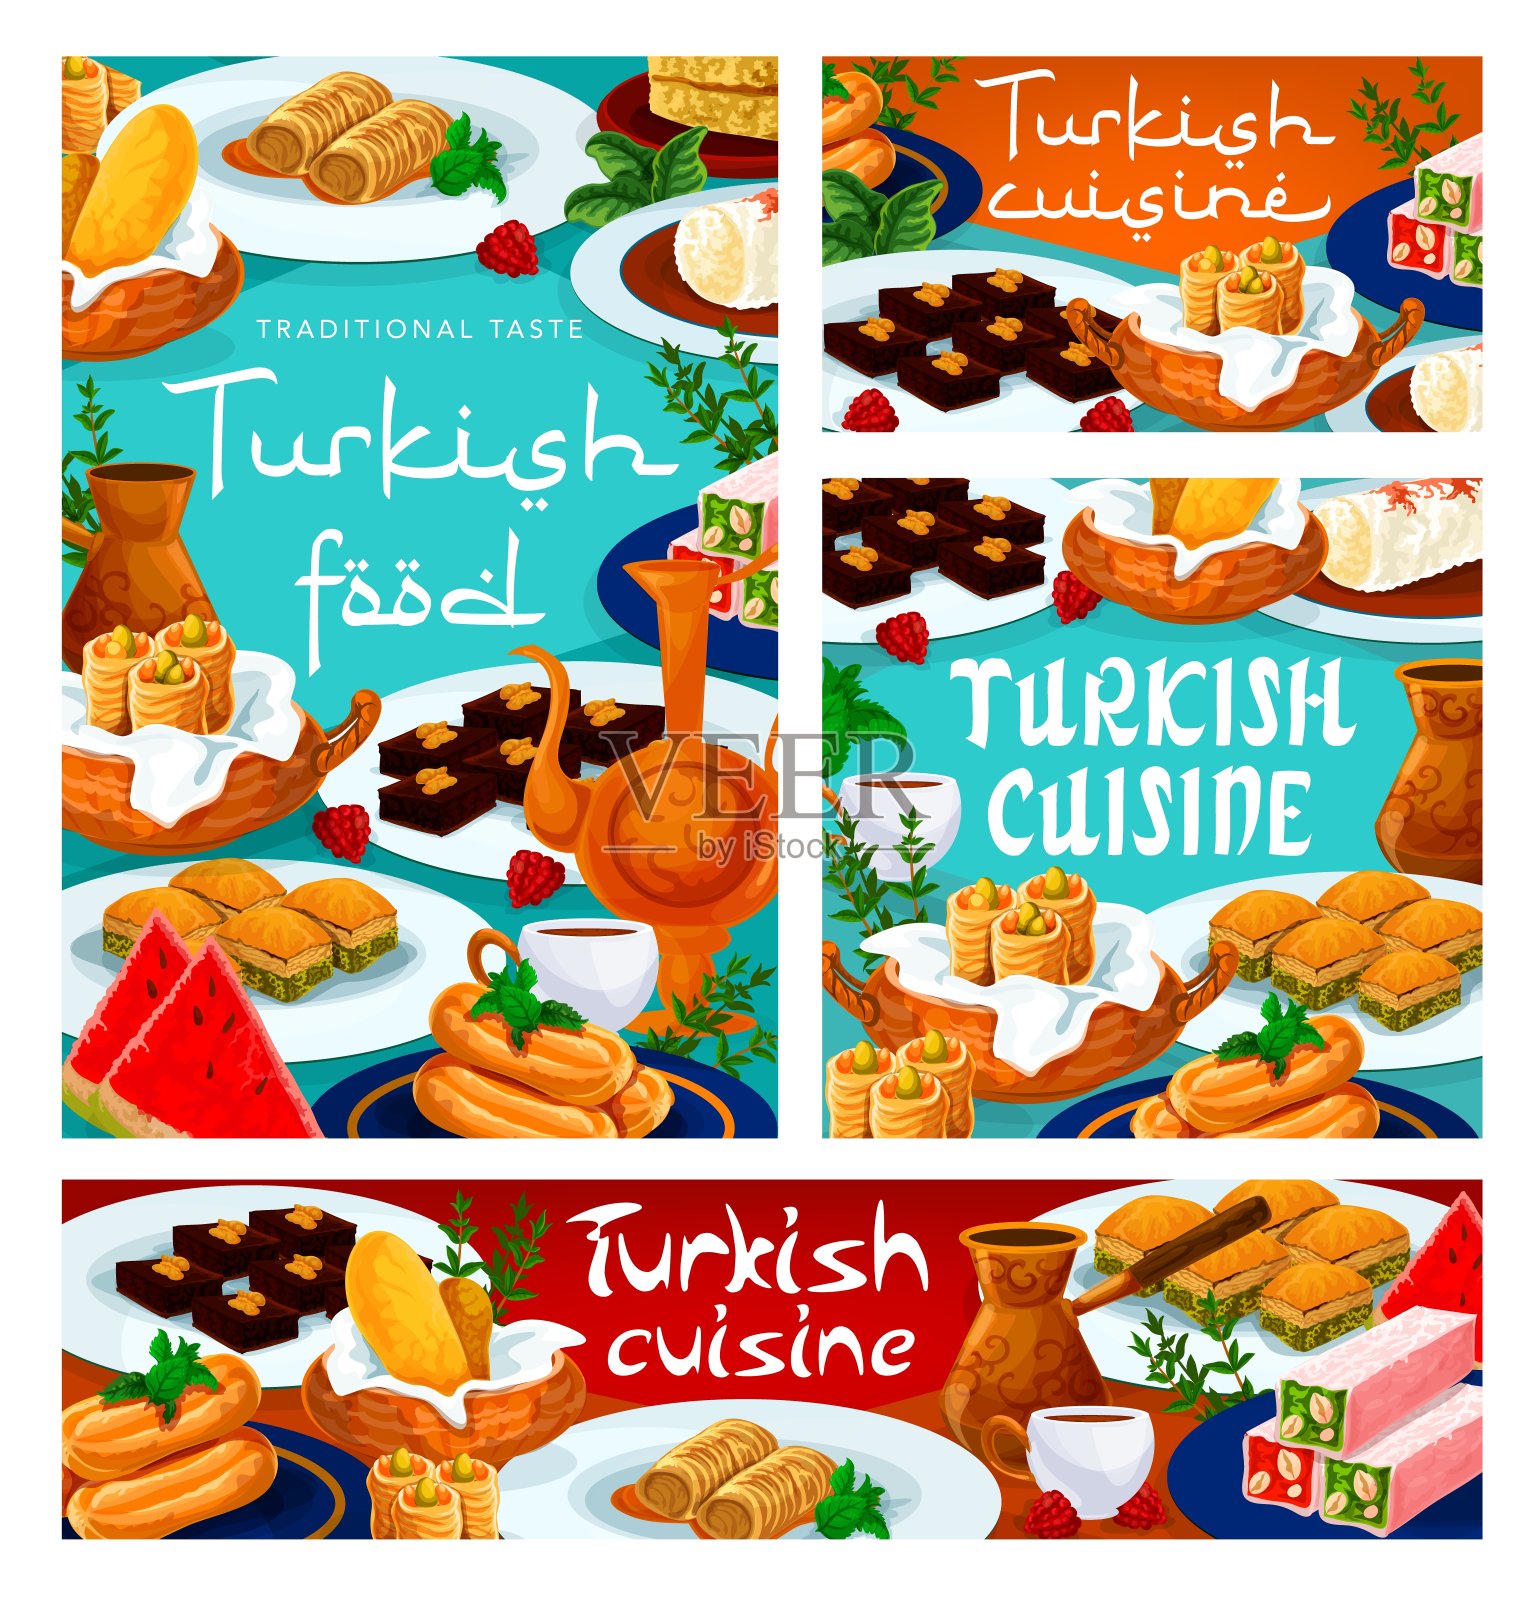 土耳其美食、果仁蜜、咖啡、茶插画图片素材